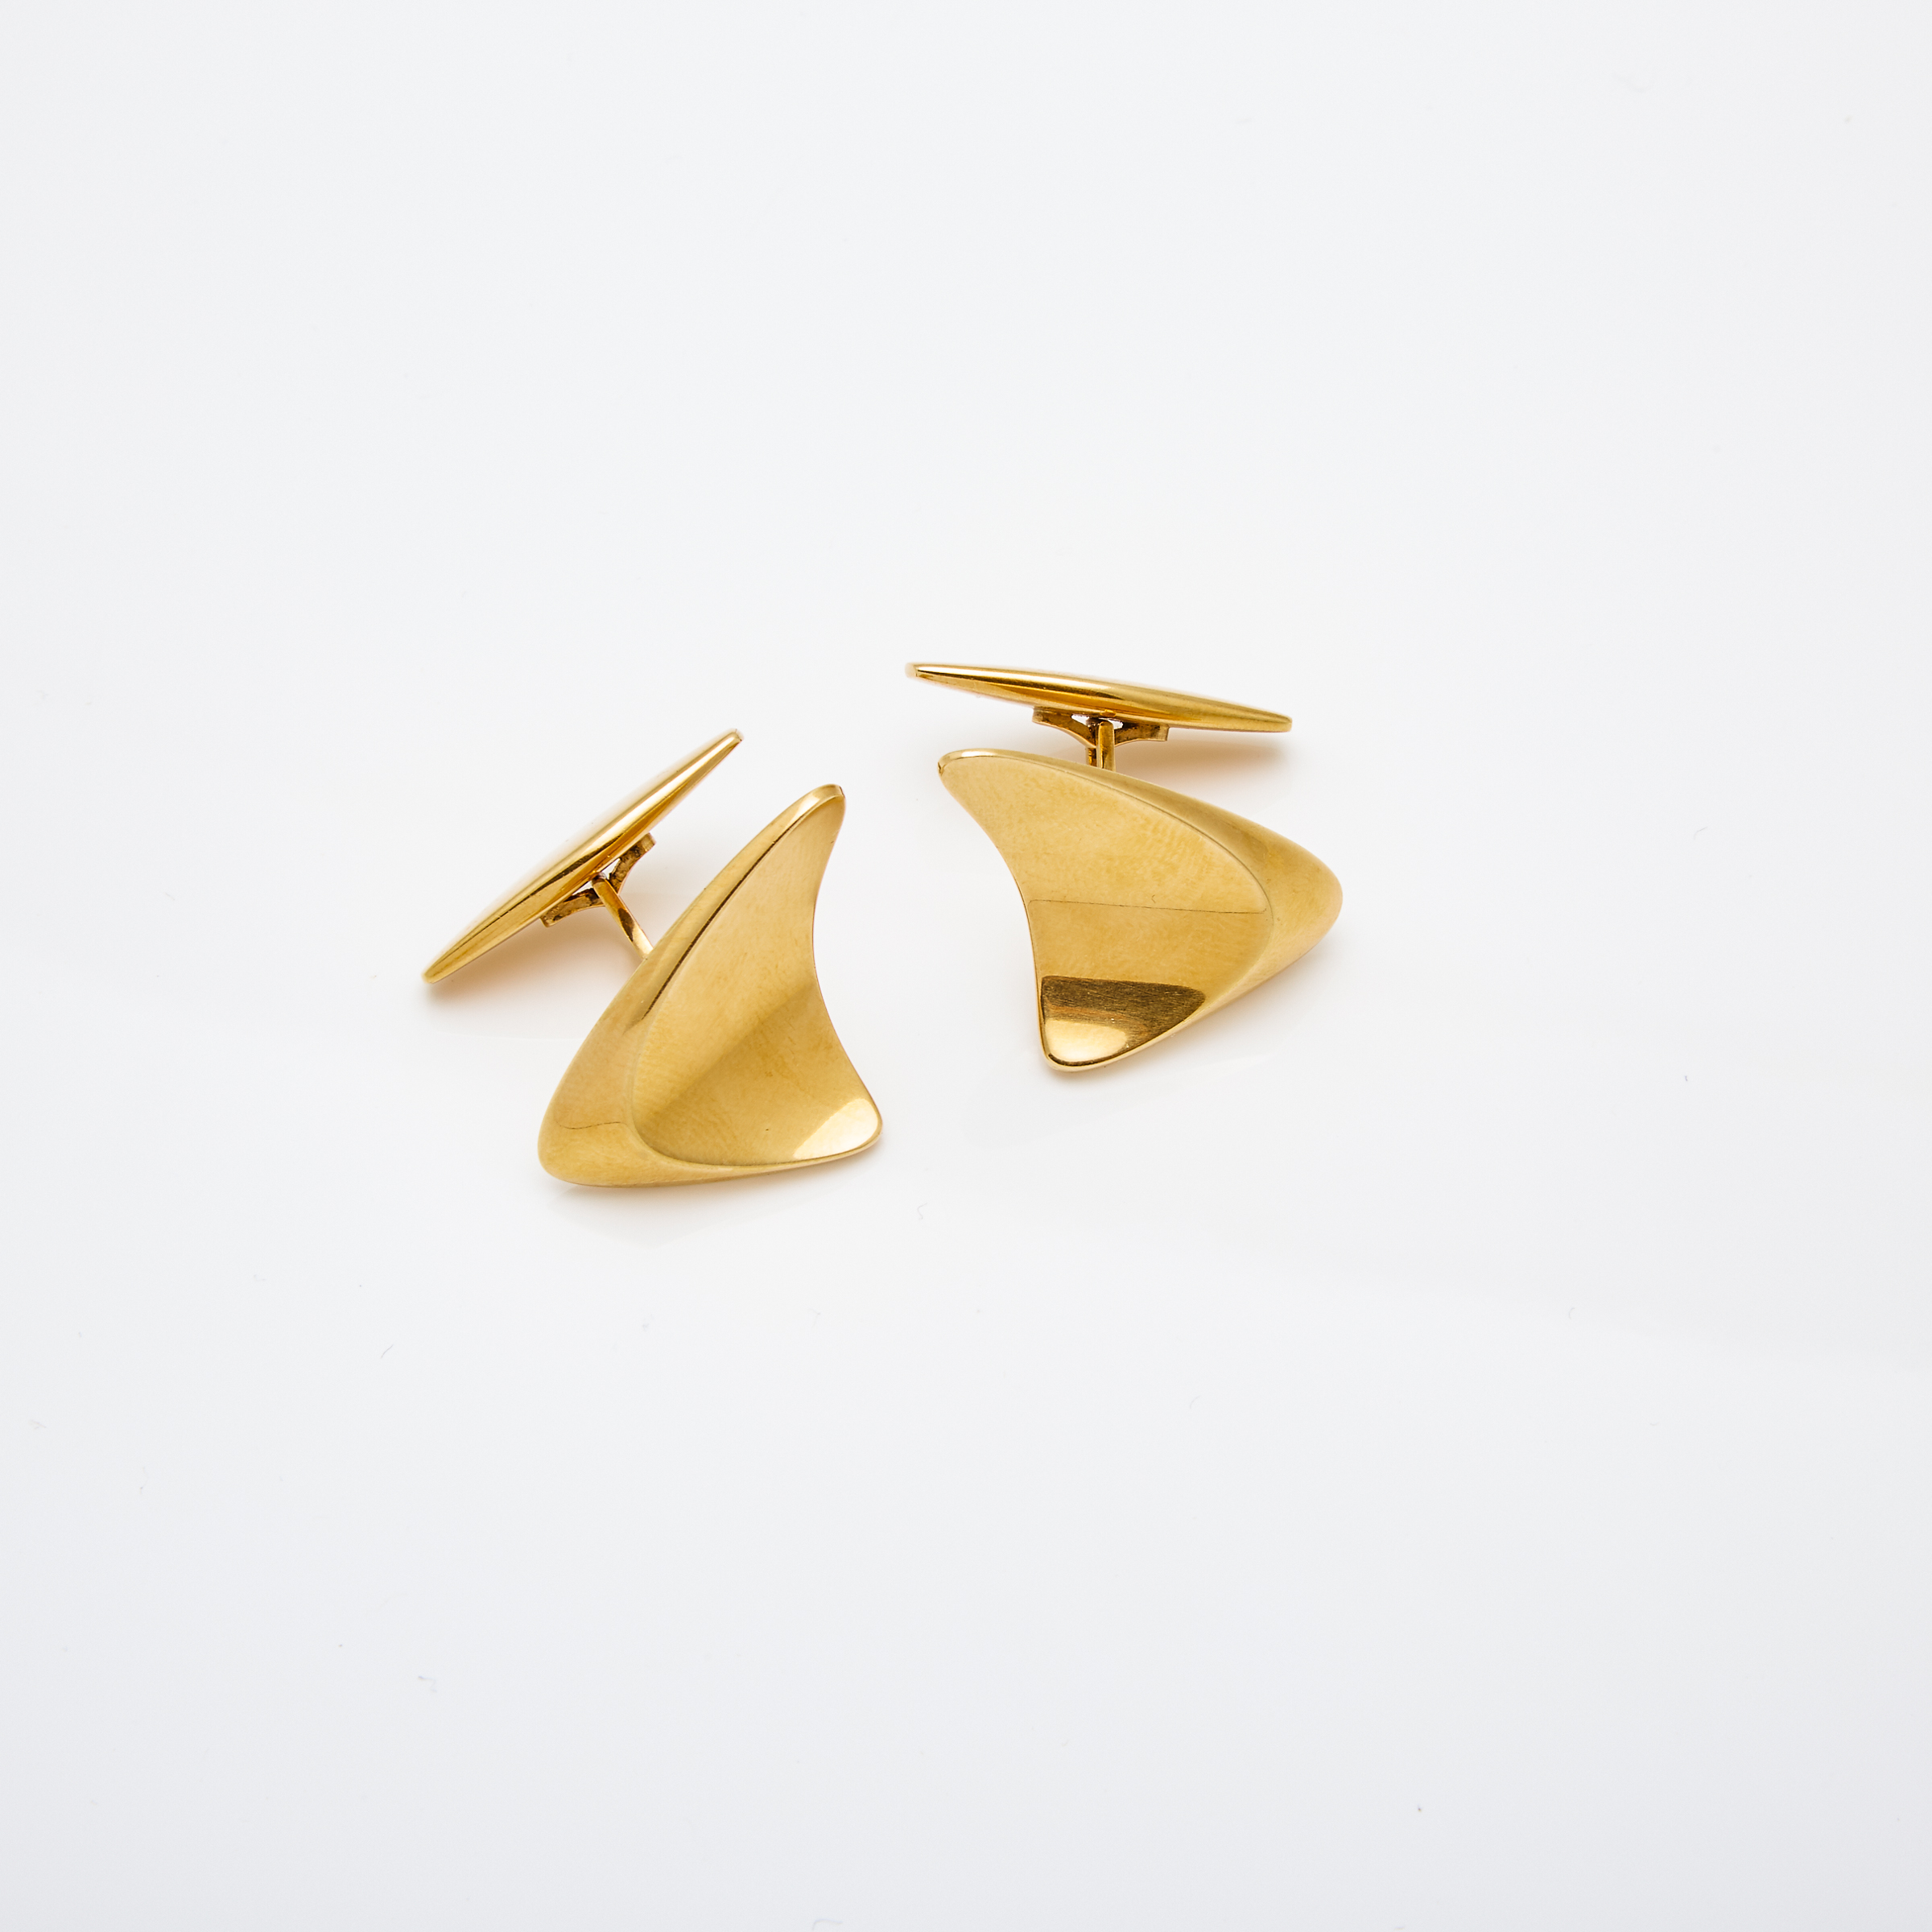 Pair Of Georg Jensen Danish 18k Yellow Gold Cufflinks